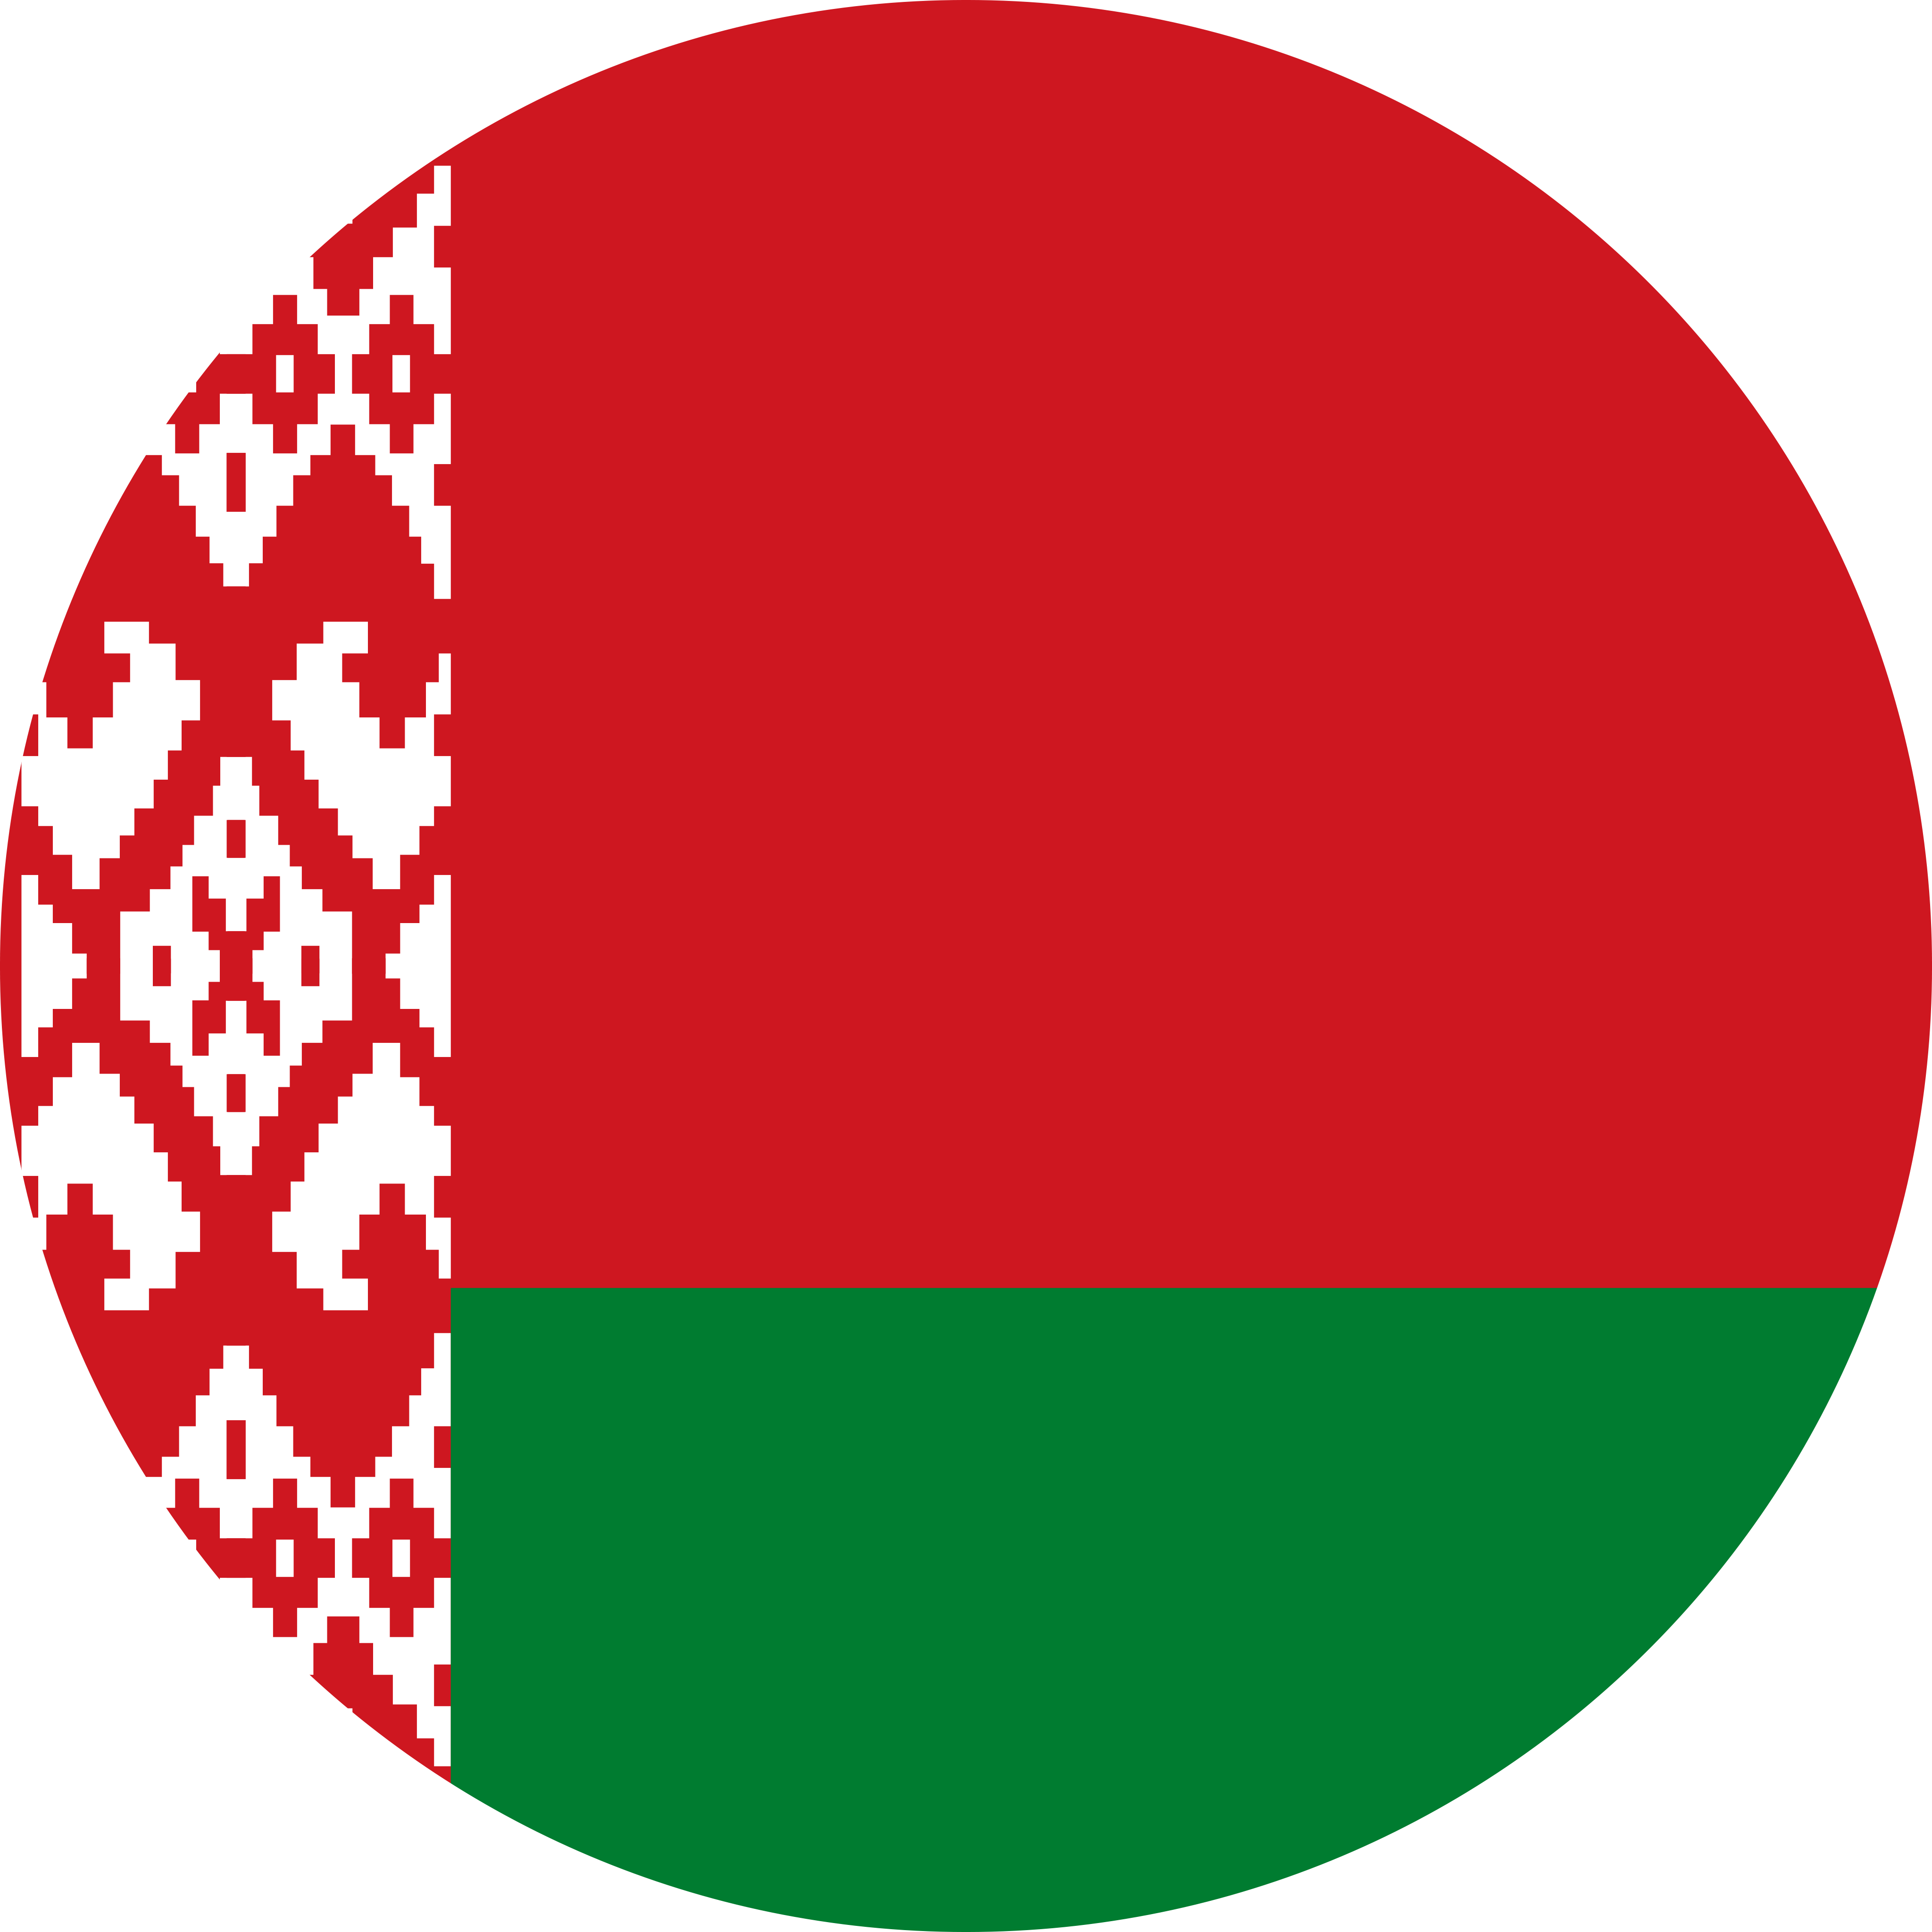 Belarus Flag PNG Pic Background